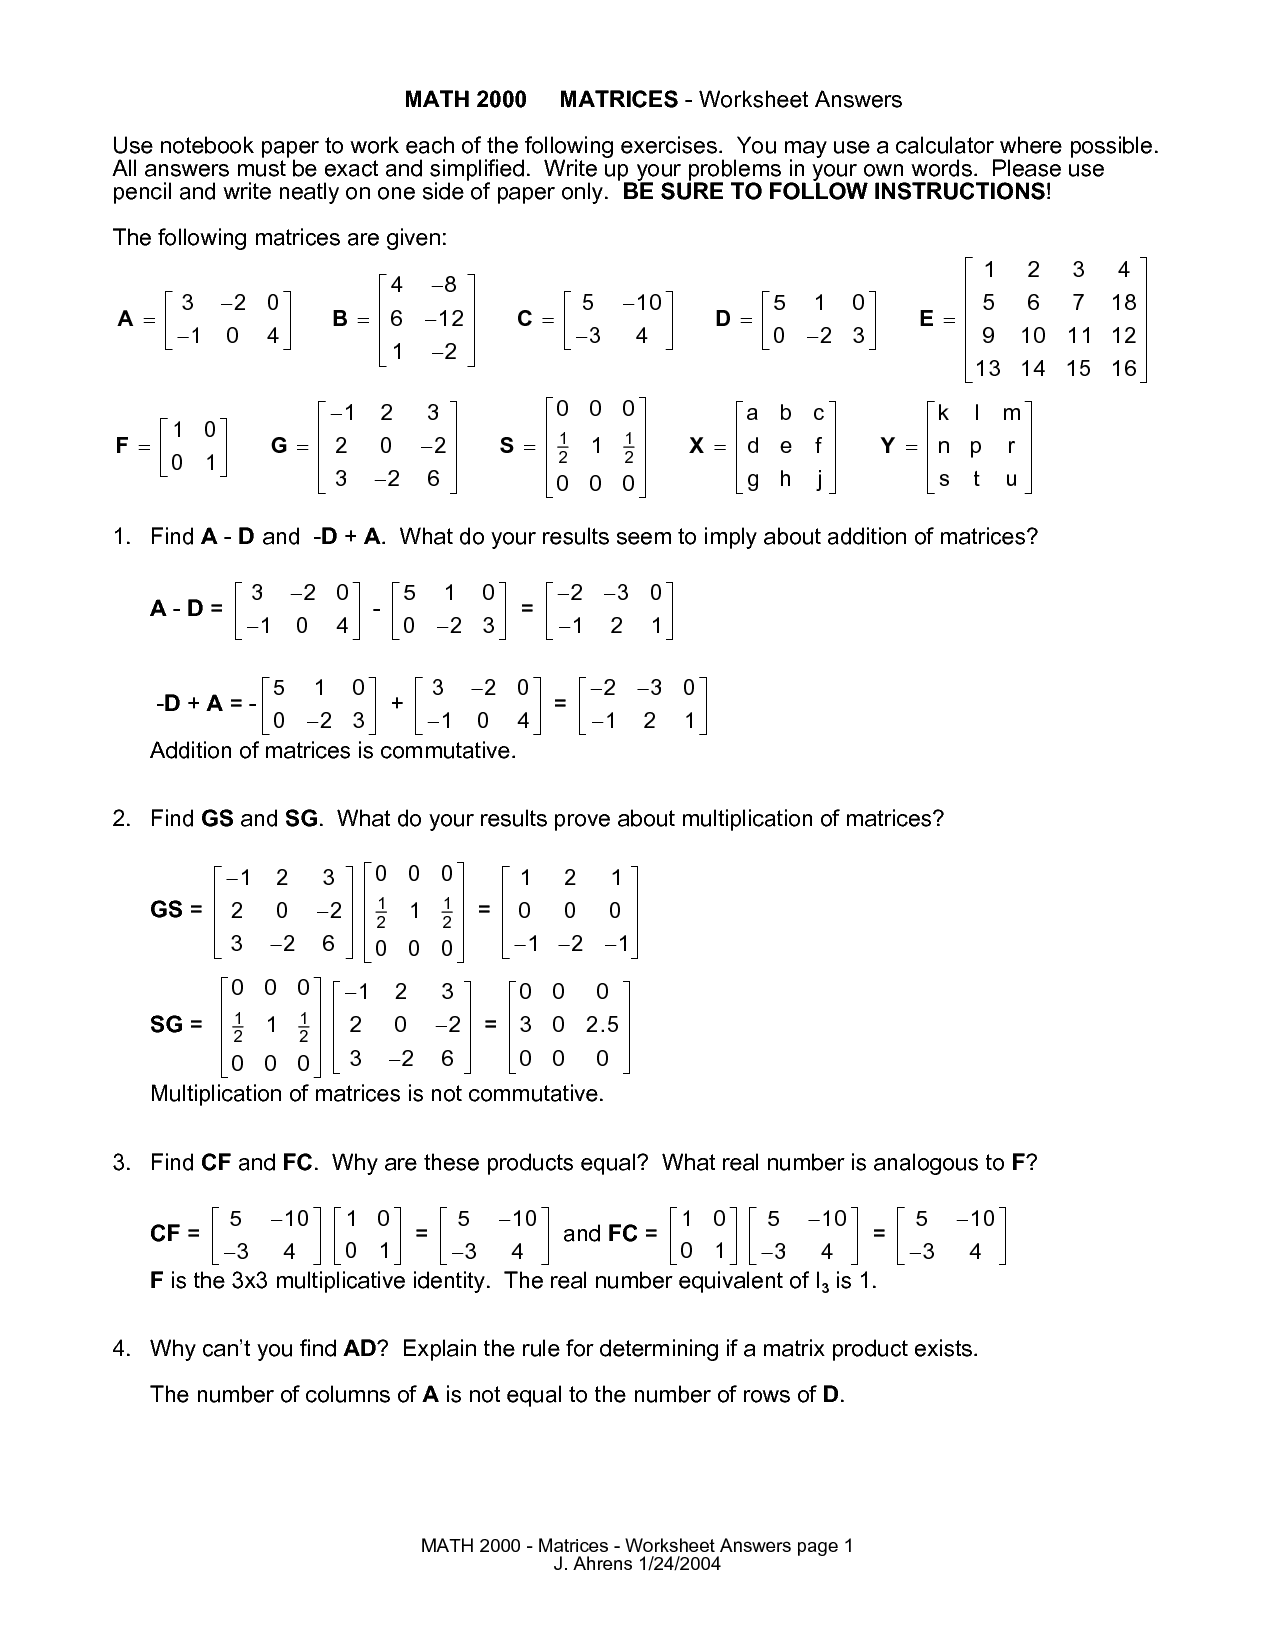 16-best-images-of-matrix-algebra-worksheets-printable-matrix-worksheets-math-matrix